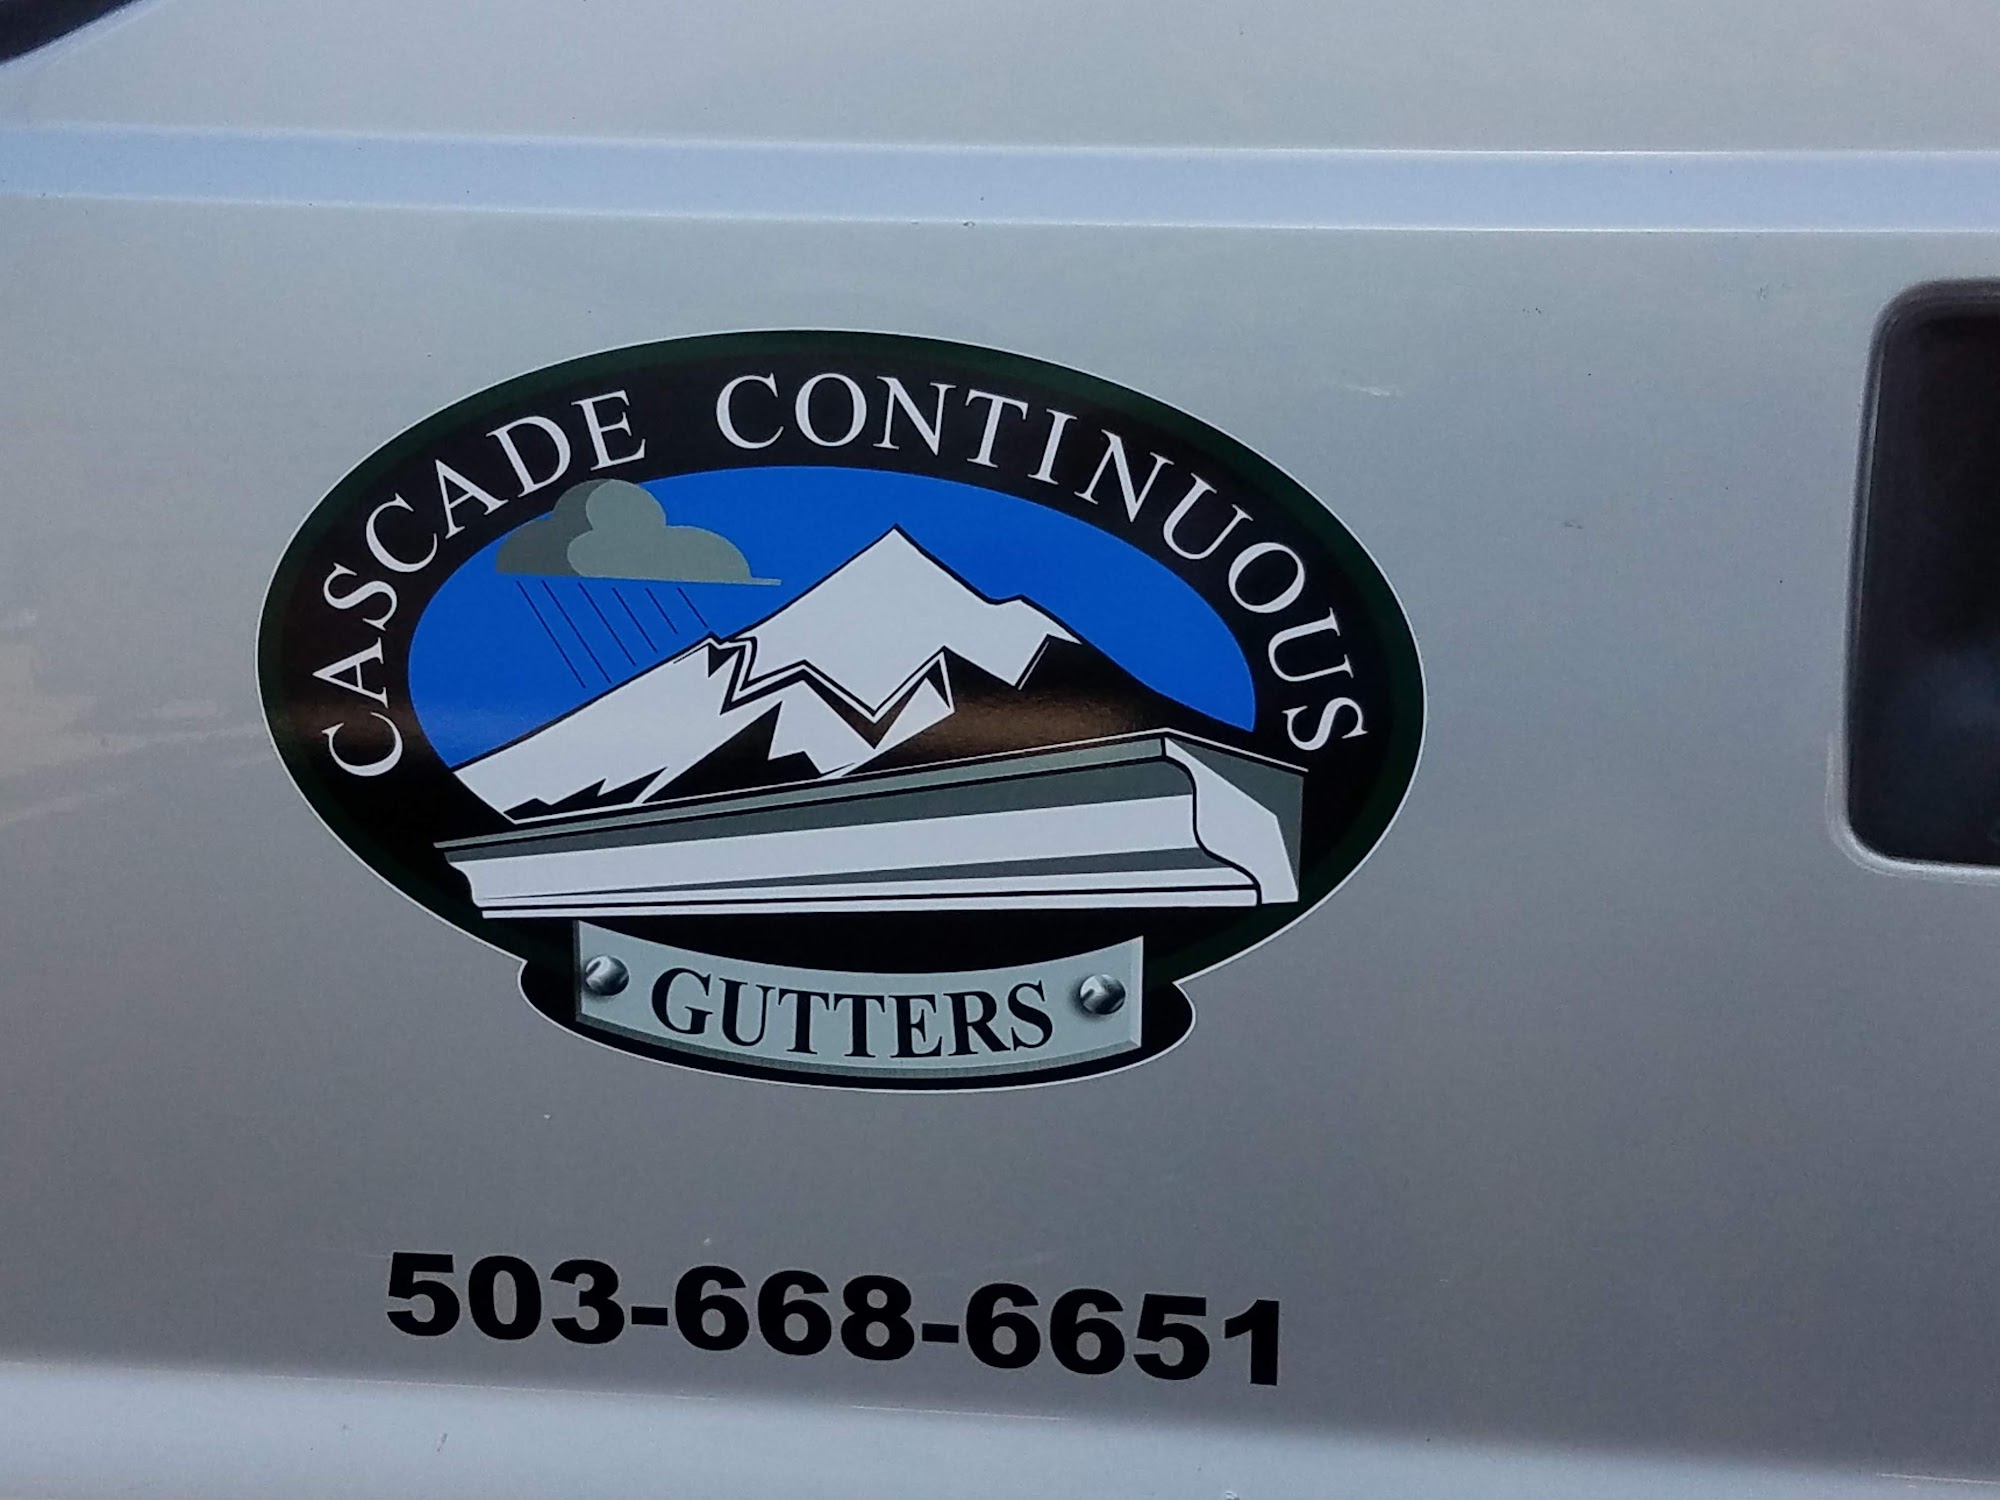 Cascade Continuous Gutters 41880 SE Hwy 26, A, 2, Sandy Oregon 97055